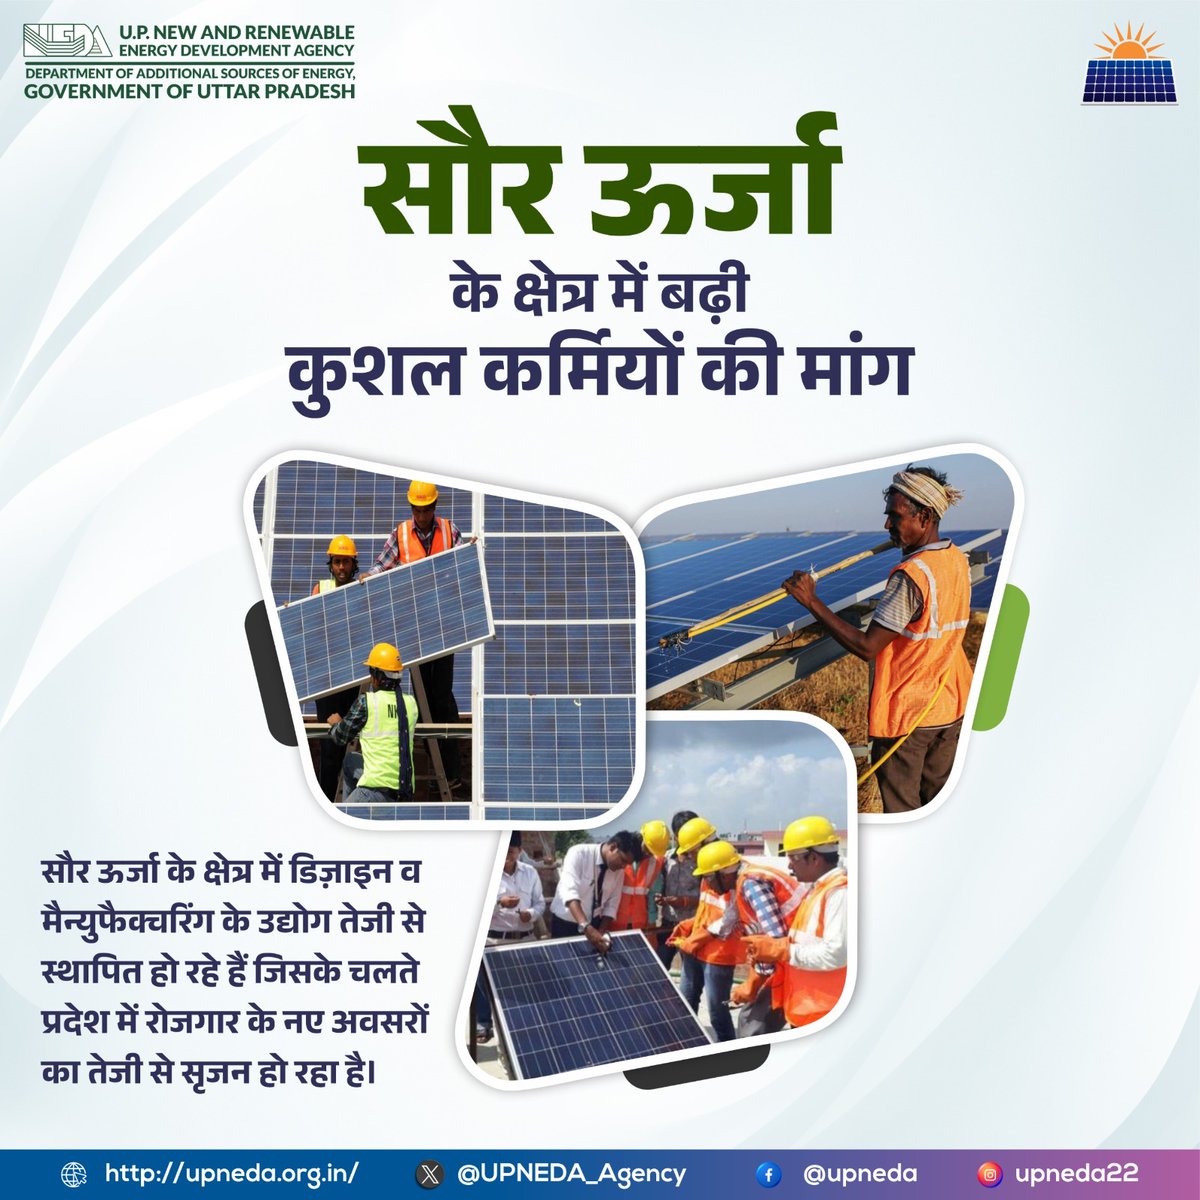 रोजगार को बढ़ावा देने में सहायक है सौर ऊर्जा क्षेत्र, विनिर्माण व सोलर संयंत्रों की स्थापना के उद्योगों में कुशल कर्मियों की मांग काफी बढ़ गयी है। 

#सौर_ऊर्जा #सोलर  #अर्थव्यवस्था #Economy 
#SolarPower #Upneda #upneda_agency
@CMOfficeUP
@aksharmaBharat
@isomendratomar